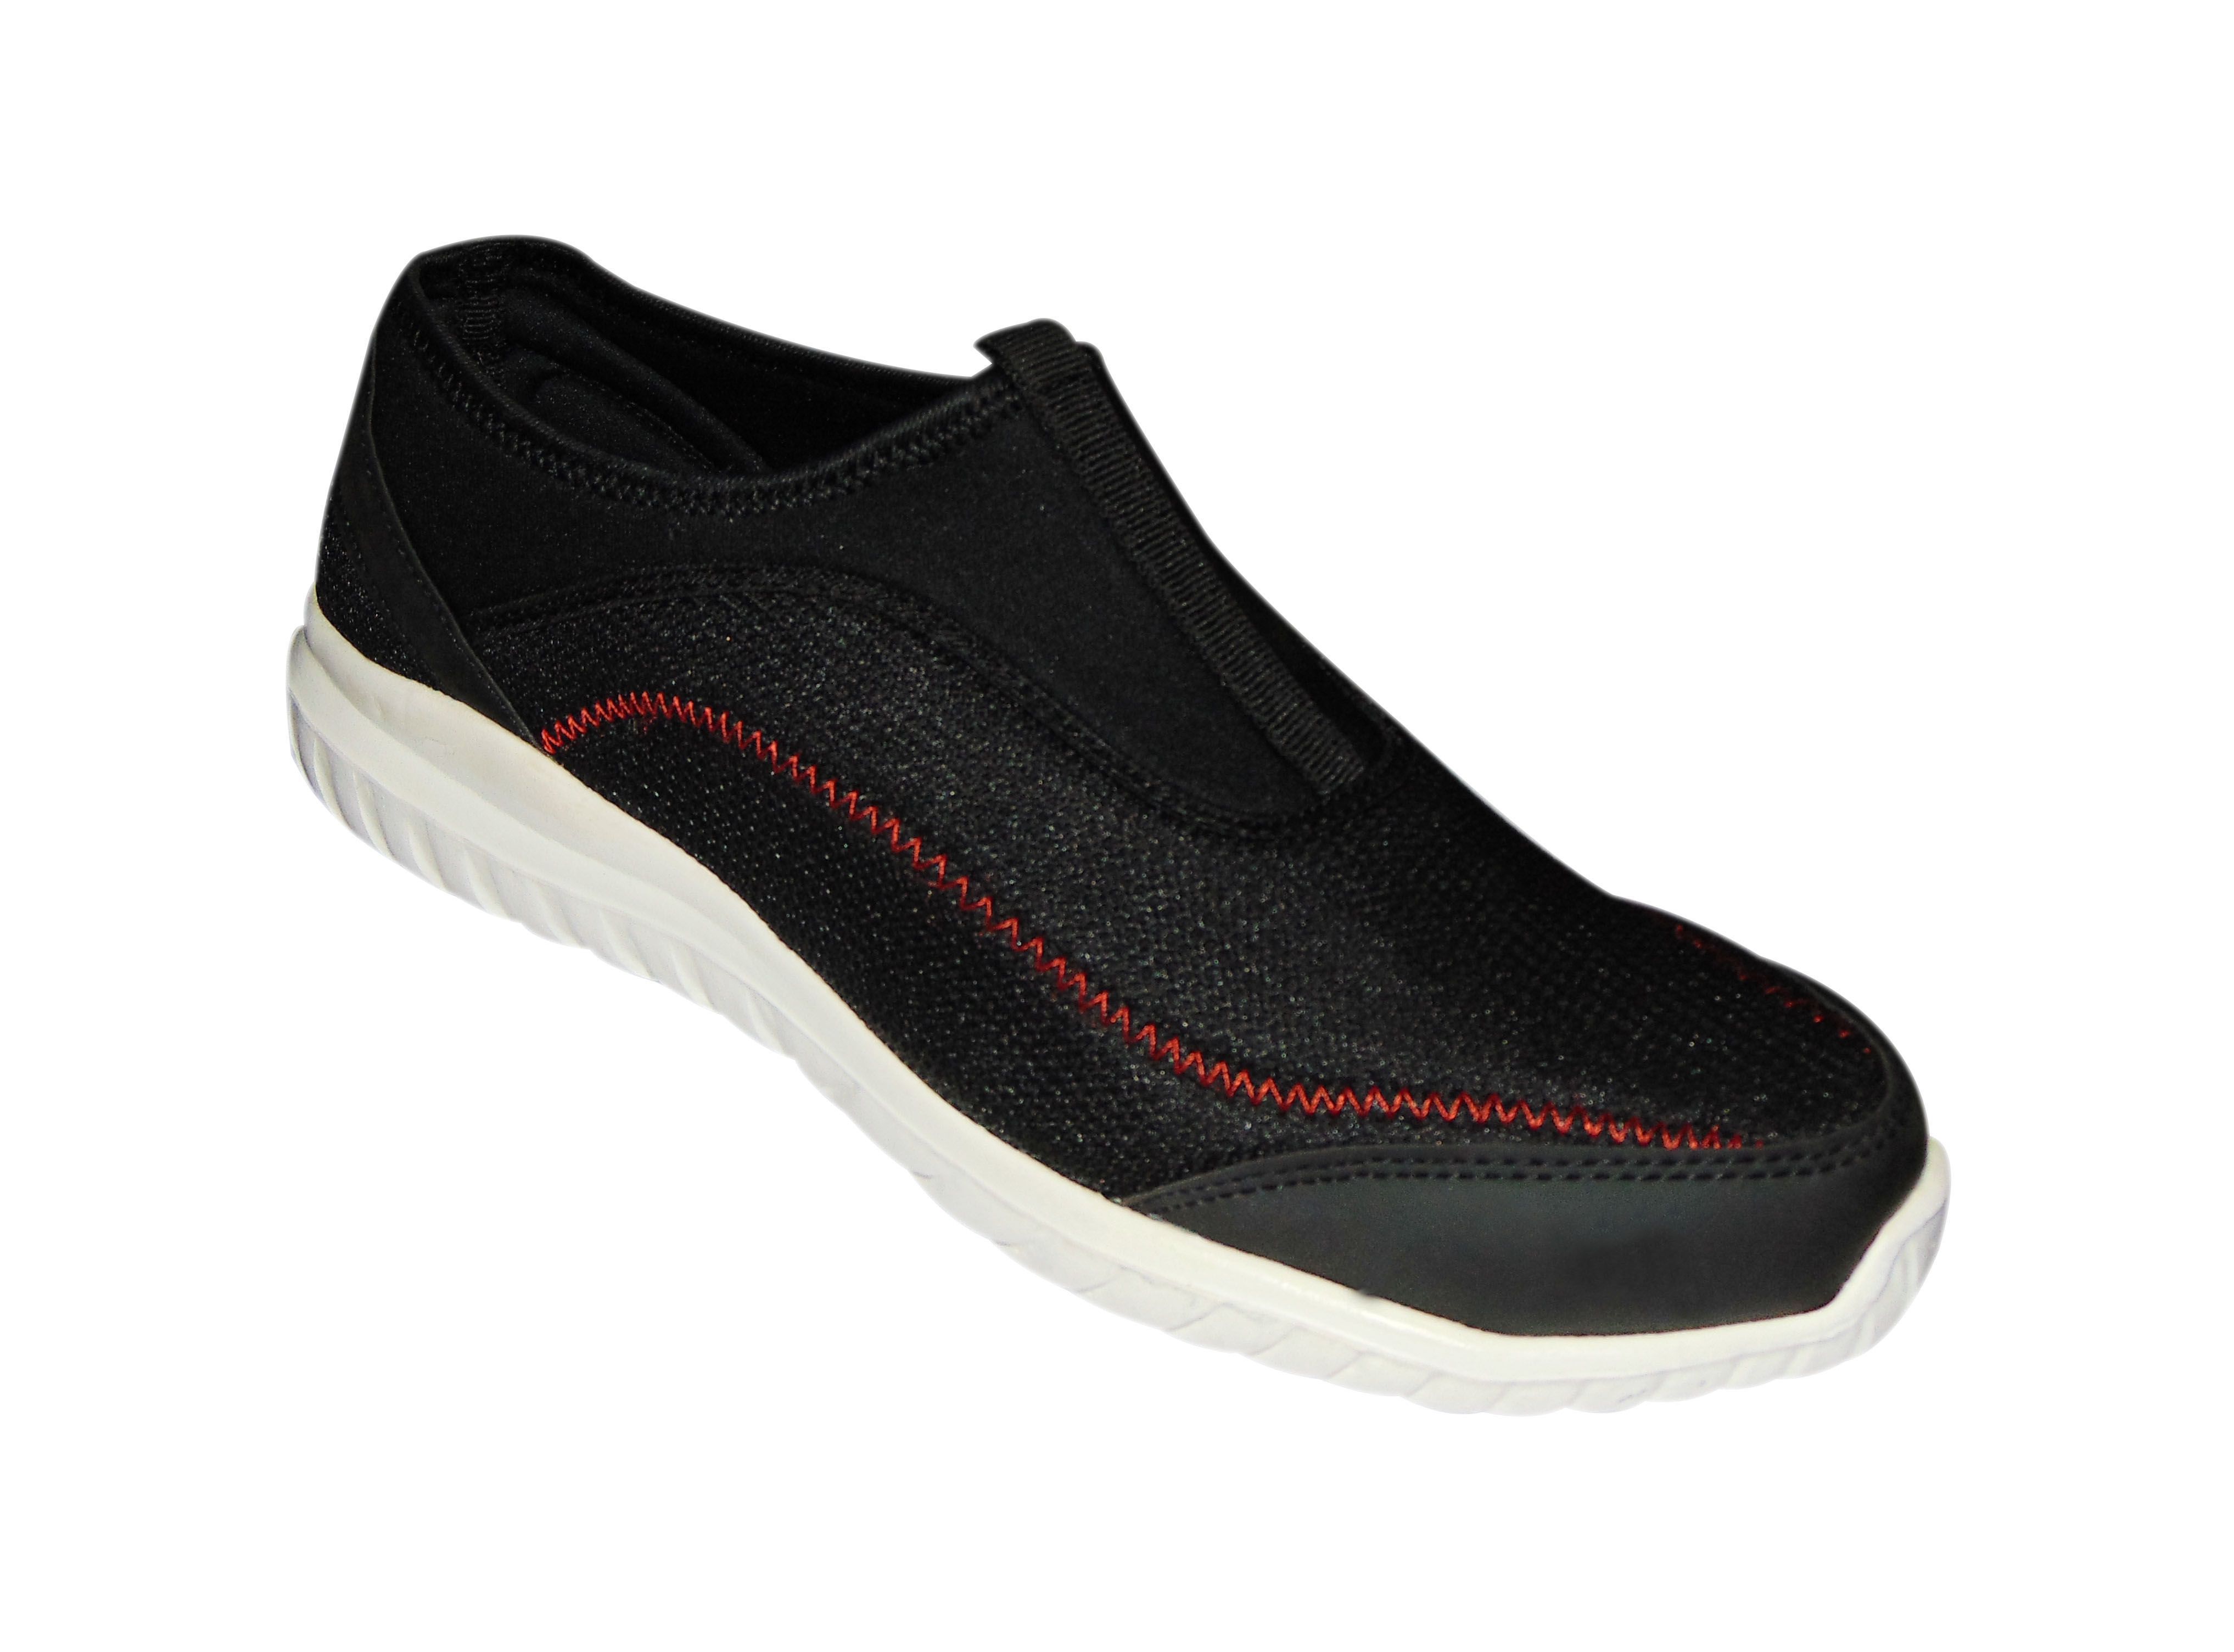 SA Enterprises Sneakers Black Casual Shoes - Buy SA Enterprises ...